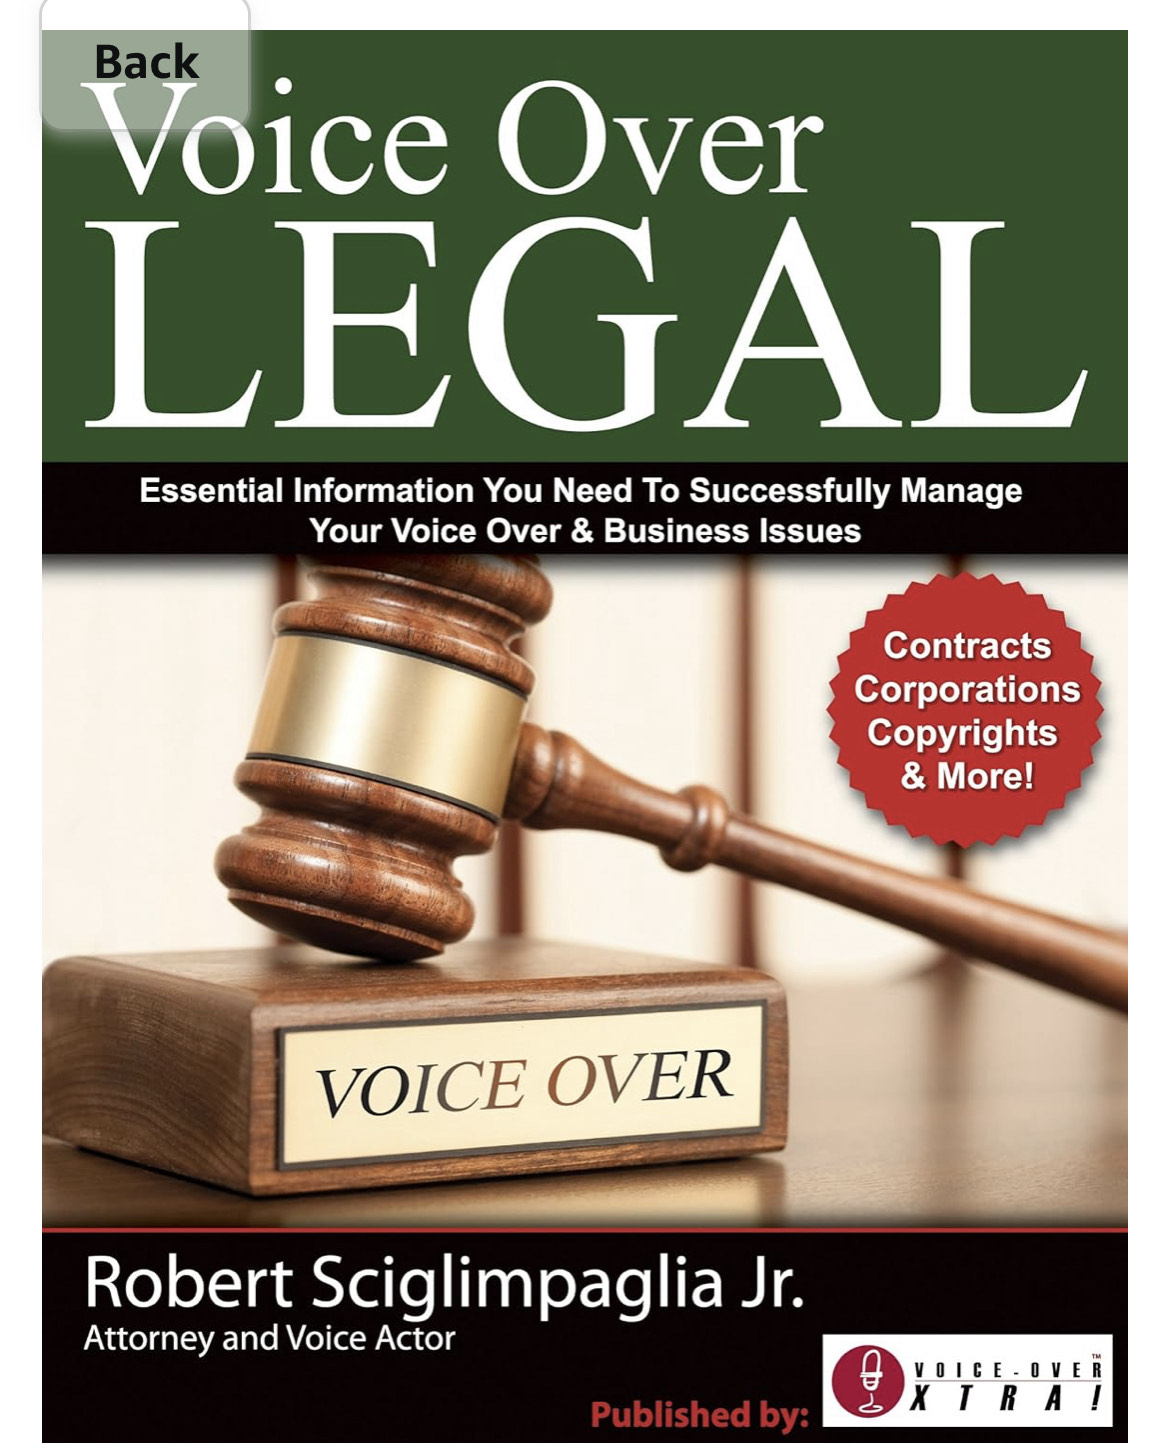 Voiceover Legal - Robert Sciglimpaglia Jr